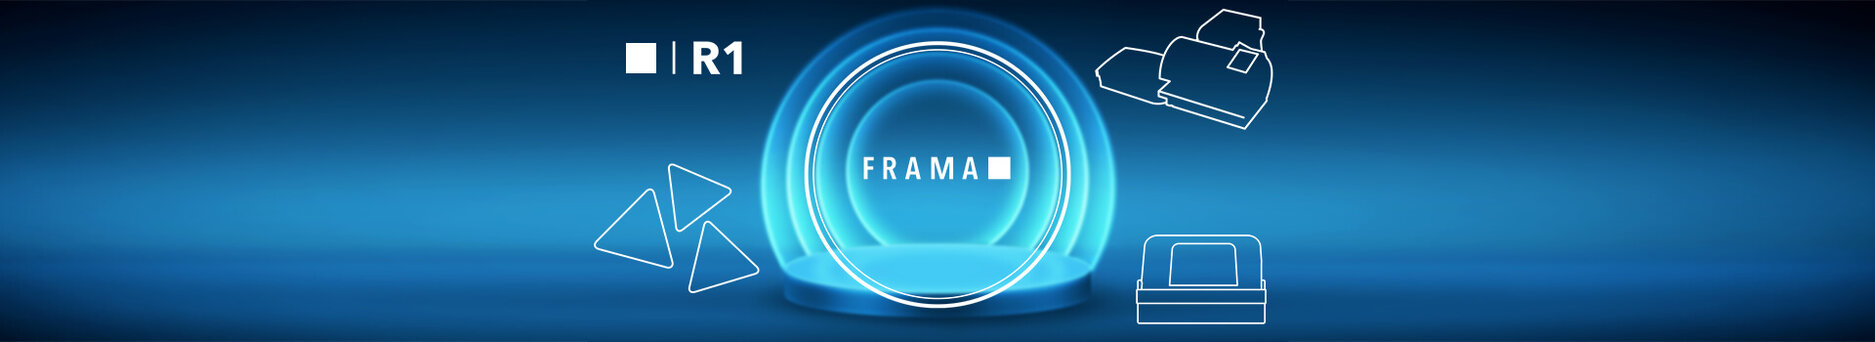 Our platforms | Frama